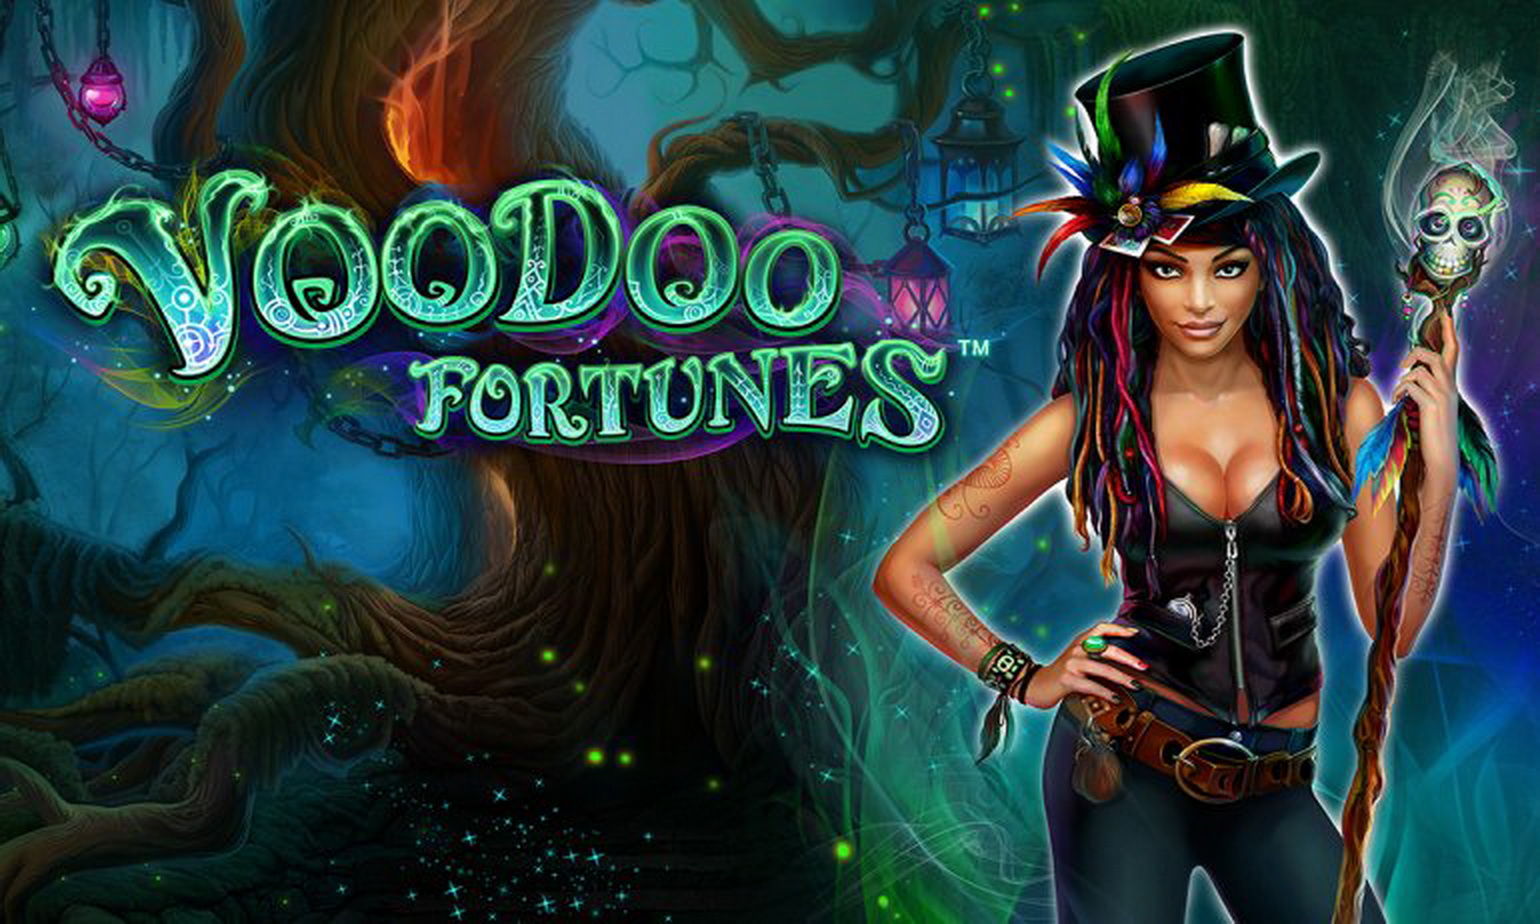 Voodoo Fortunes